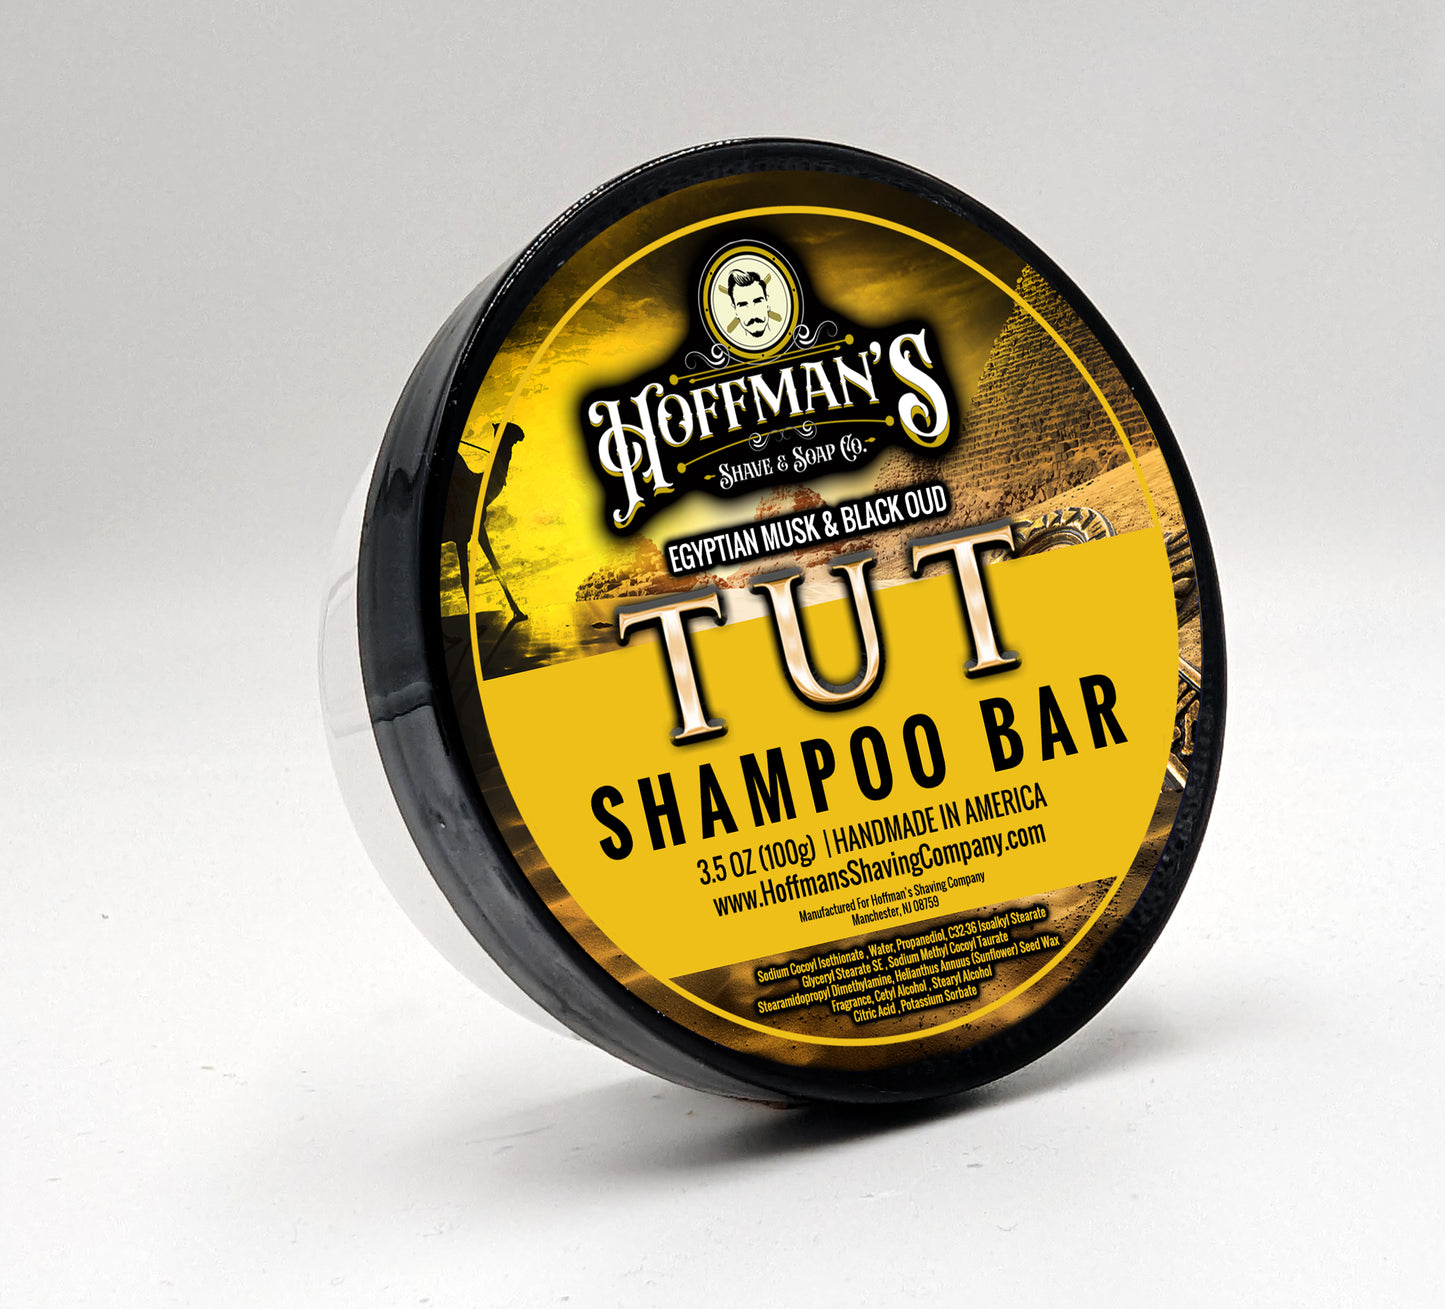 TUT Shampoo Bar 3.5 oz